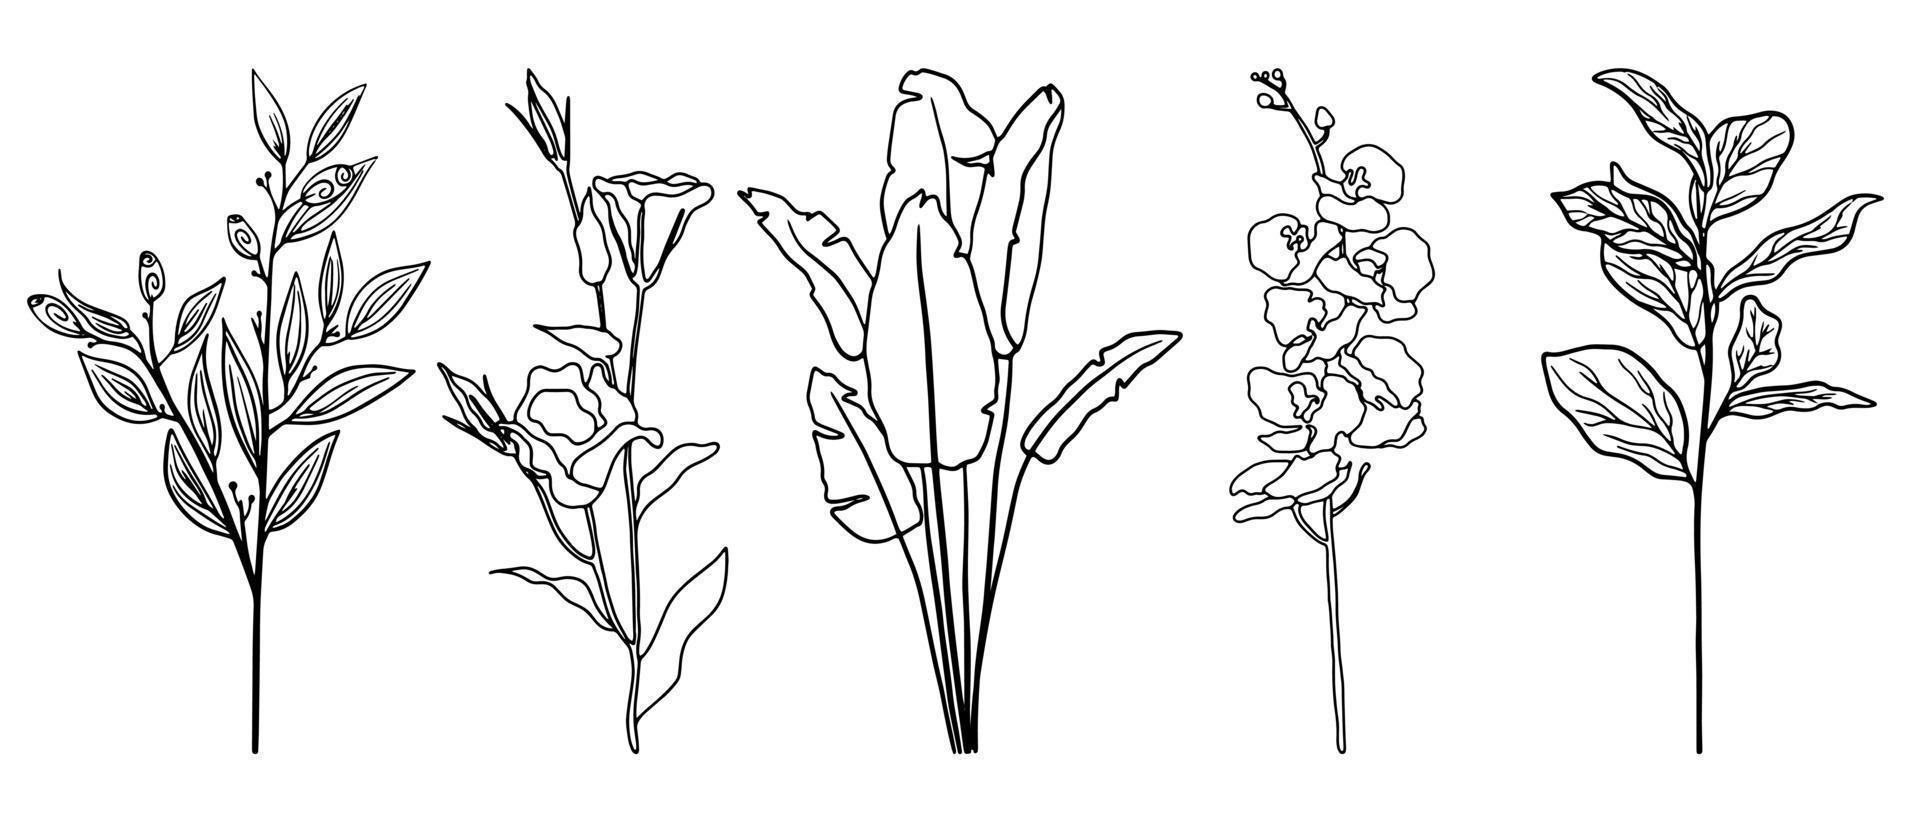 vektor uppsättning exotiska blad och blommor ritade i en rad. doodle tropisk blommig illustration. enkel linje palmer set.